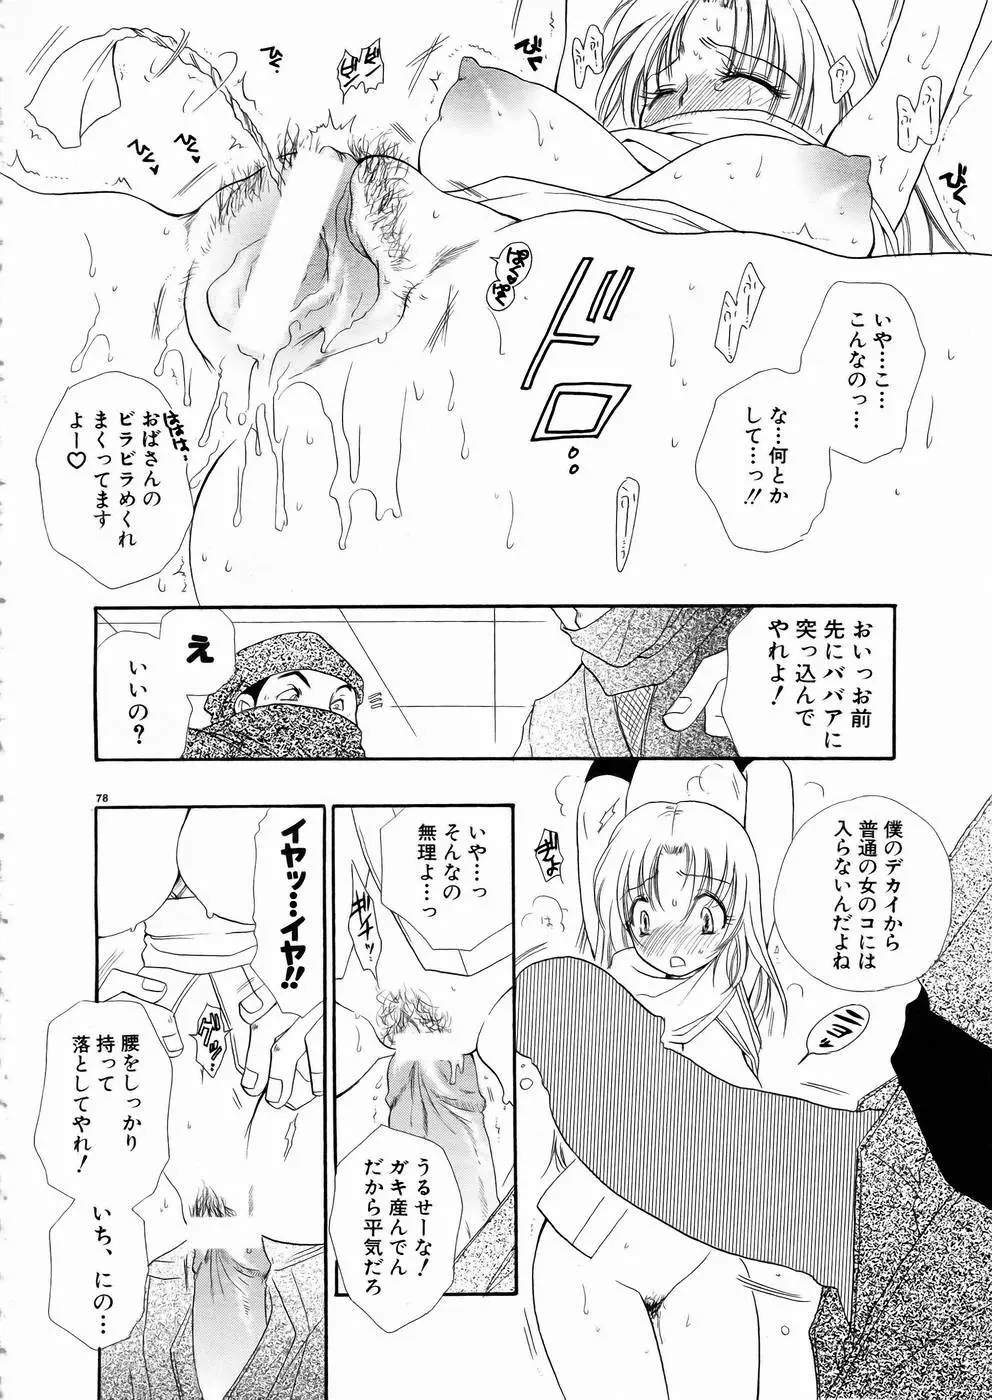 少女剣客凌辱コミック Vol.01 くノ一斬! 75ページ